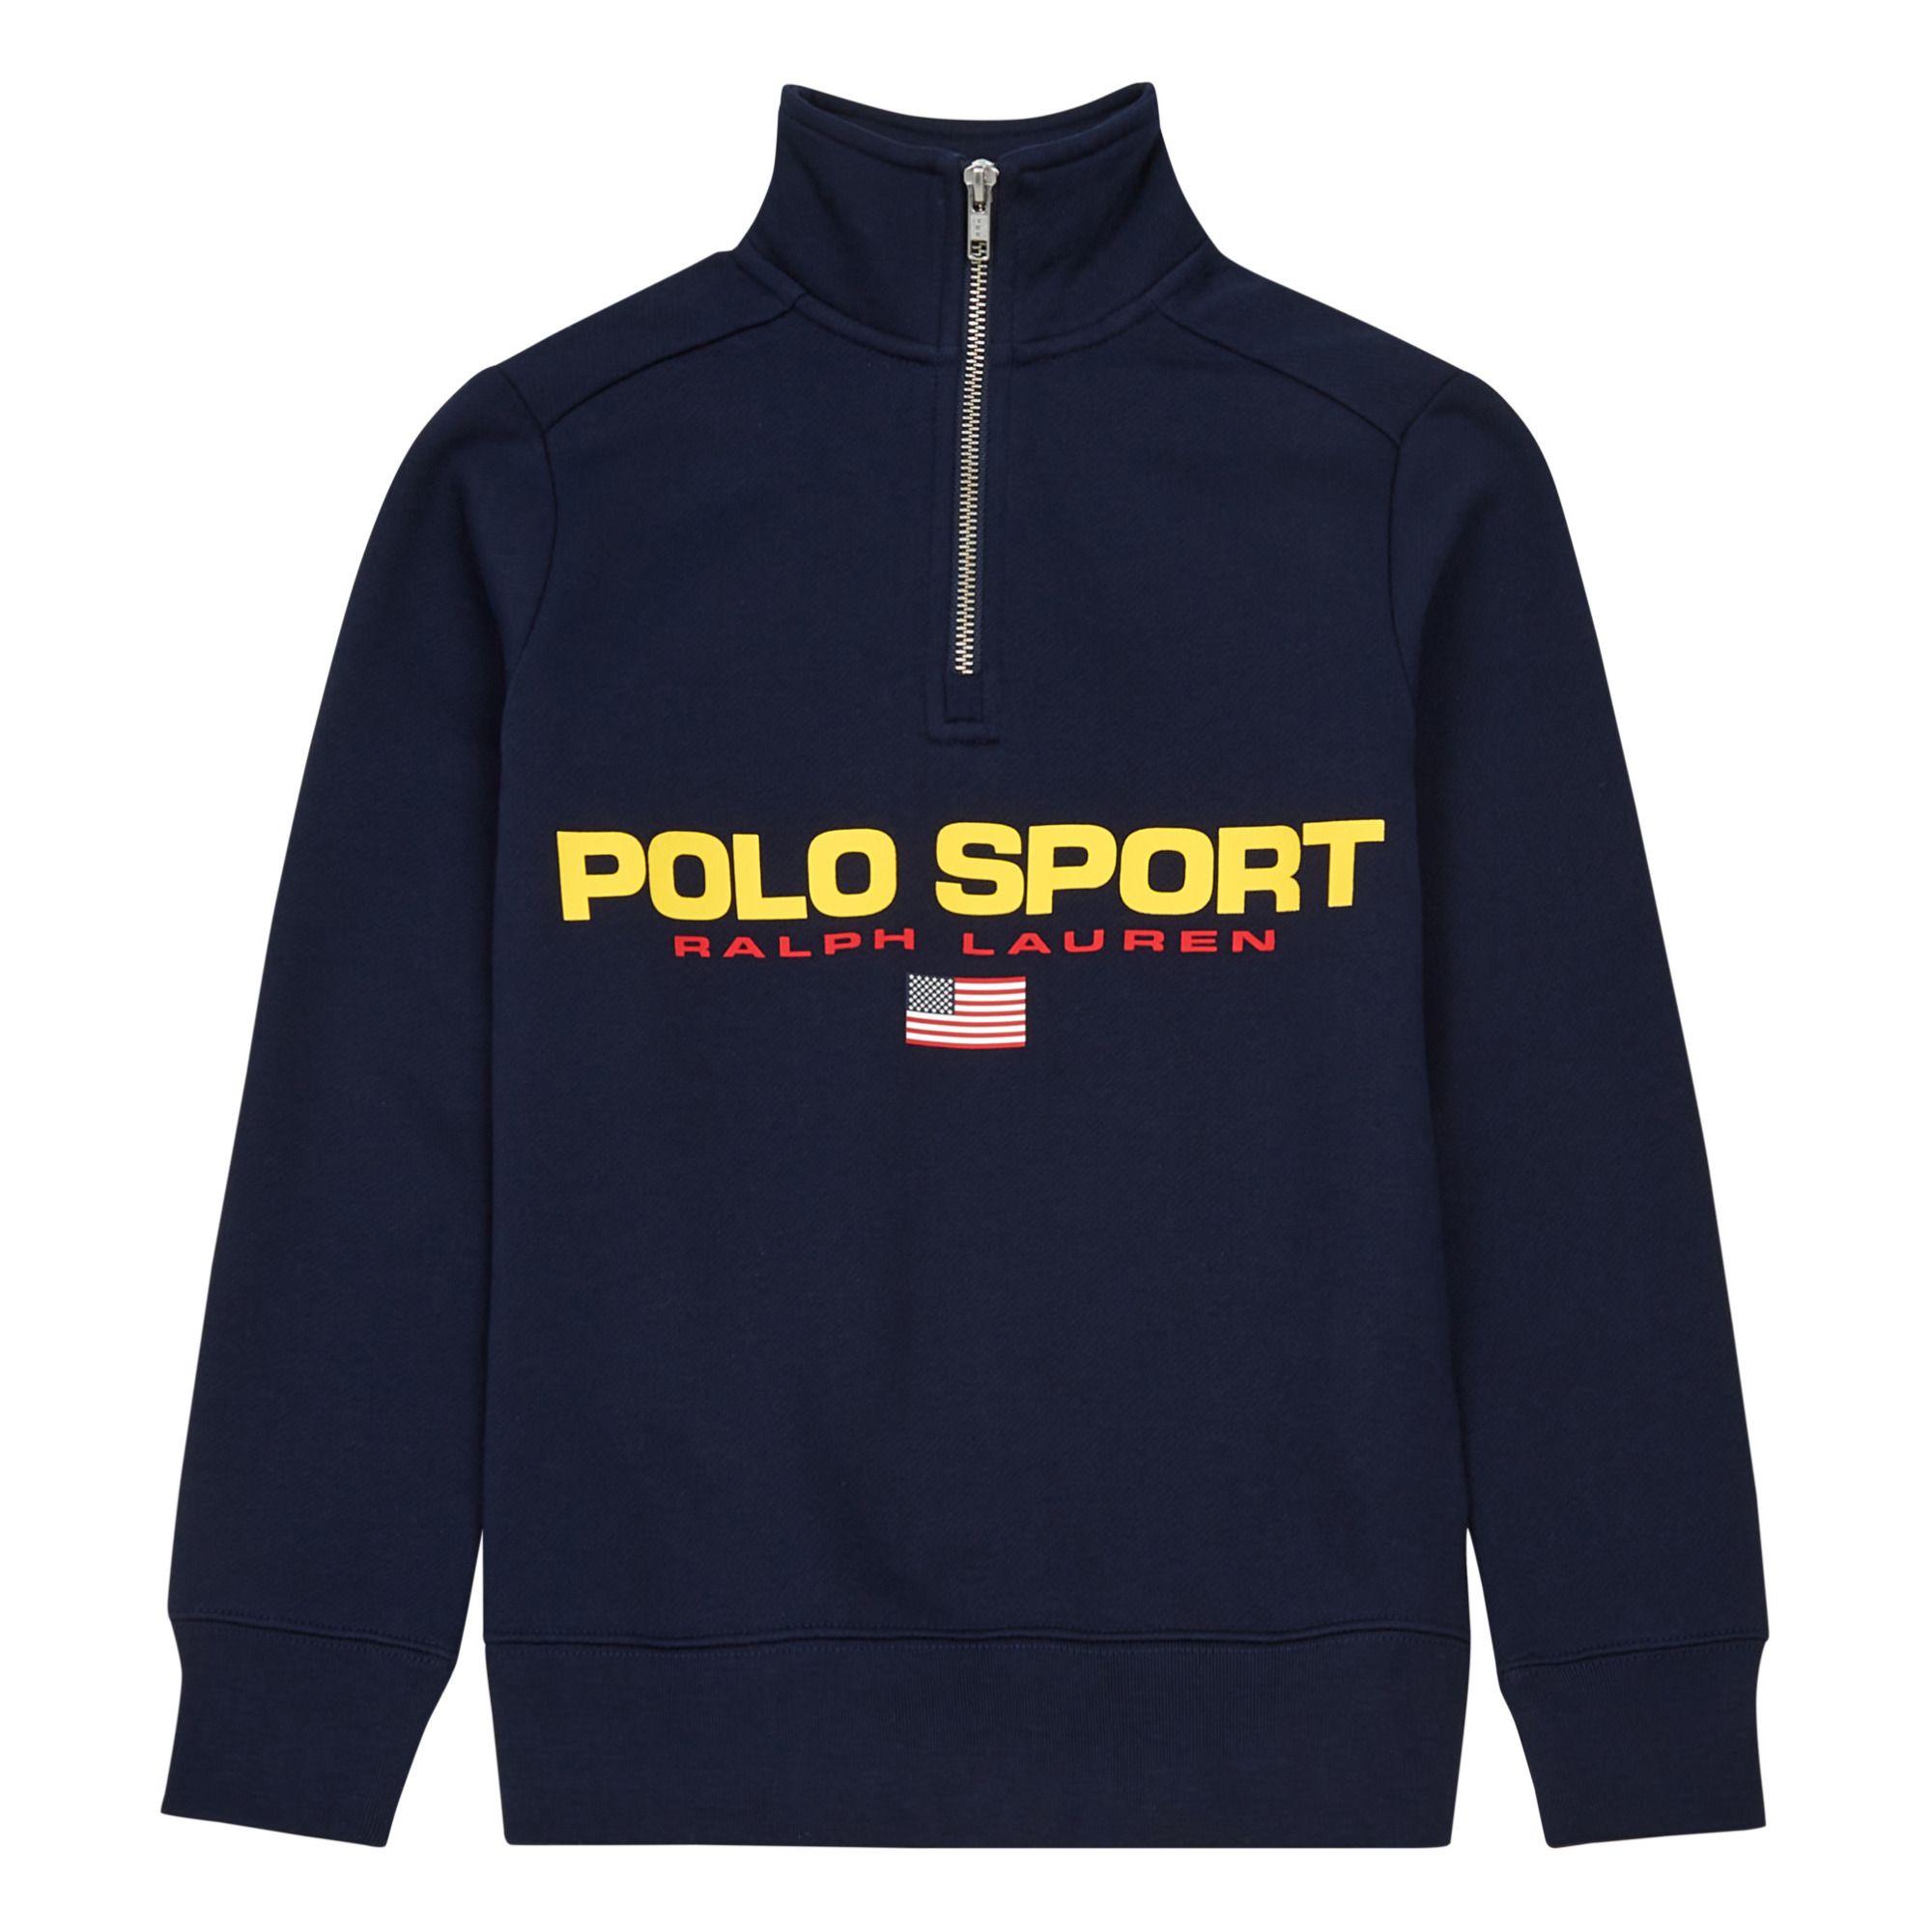 Ralph Lauren - Pull Polo Sport - Garçon - Bleu marine